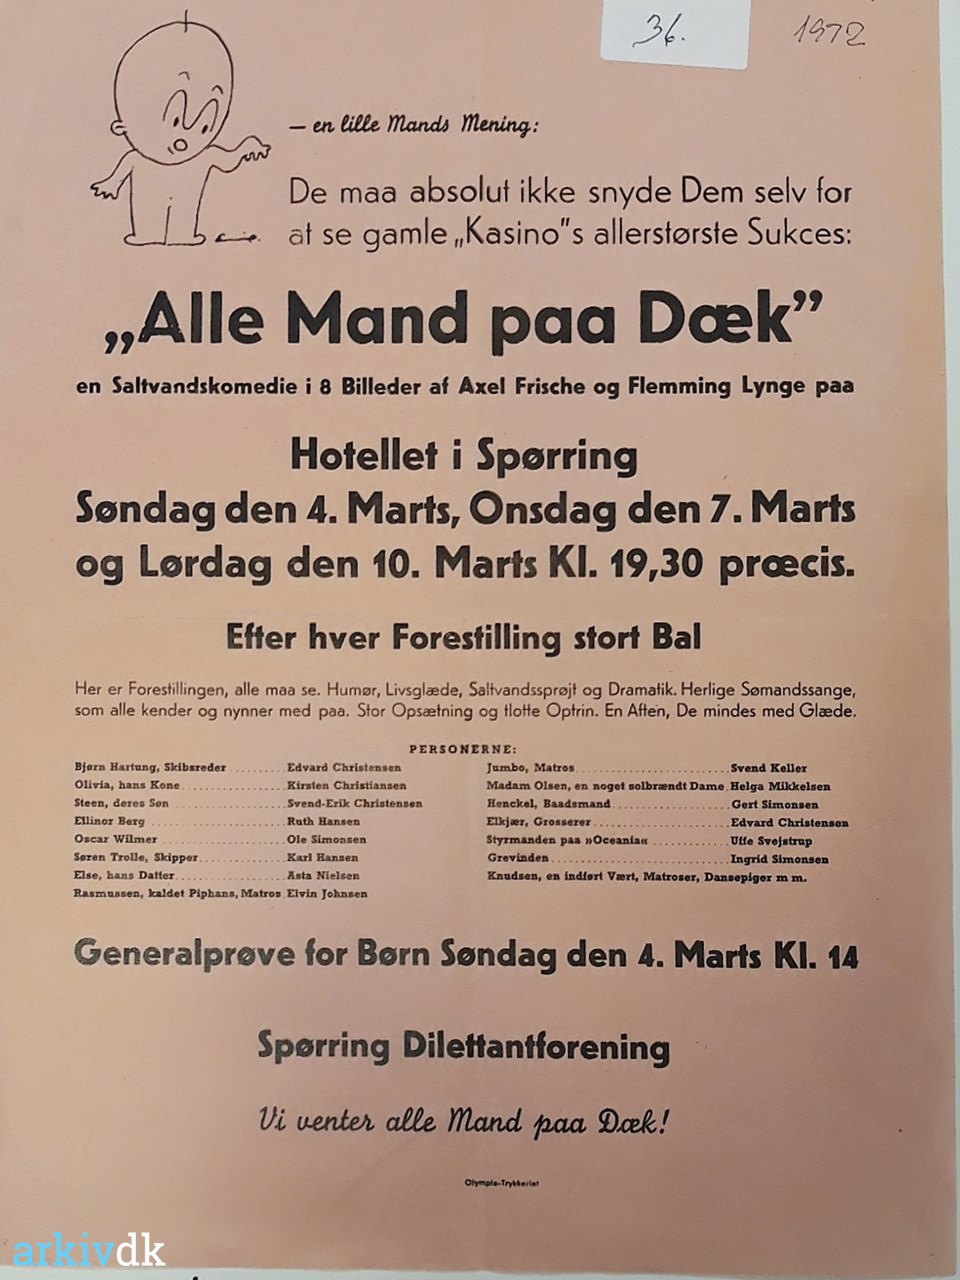 Ride Modernisering Evakuering arkiv.dk | "Alle Mand på Dæk"1972. Plakat